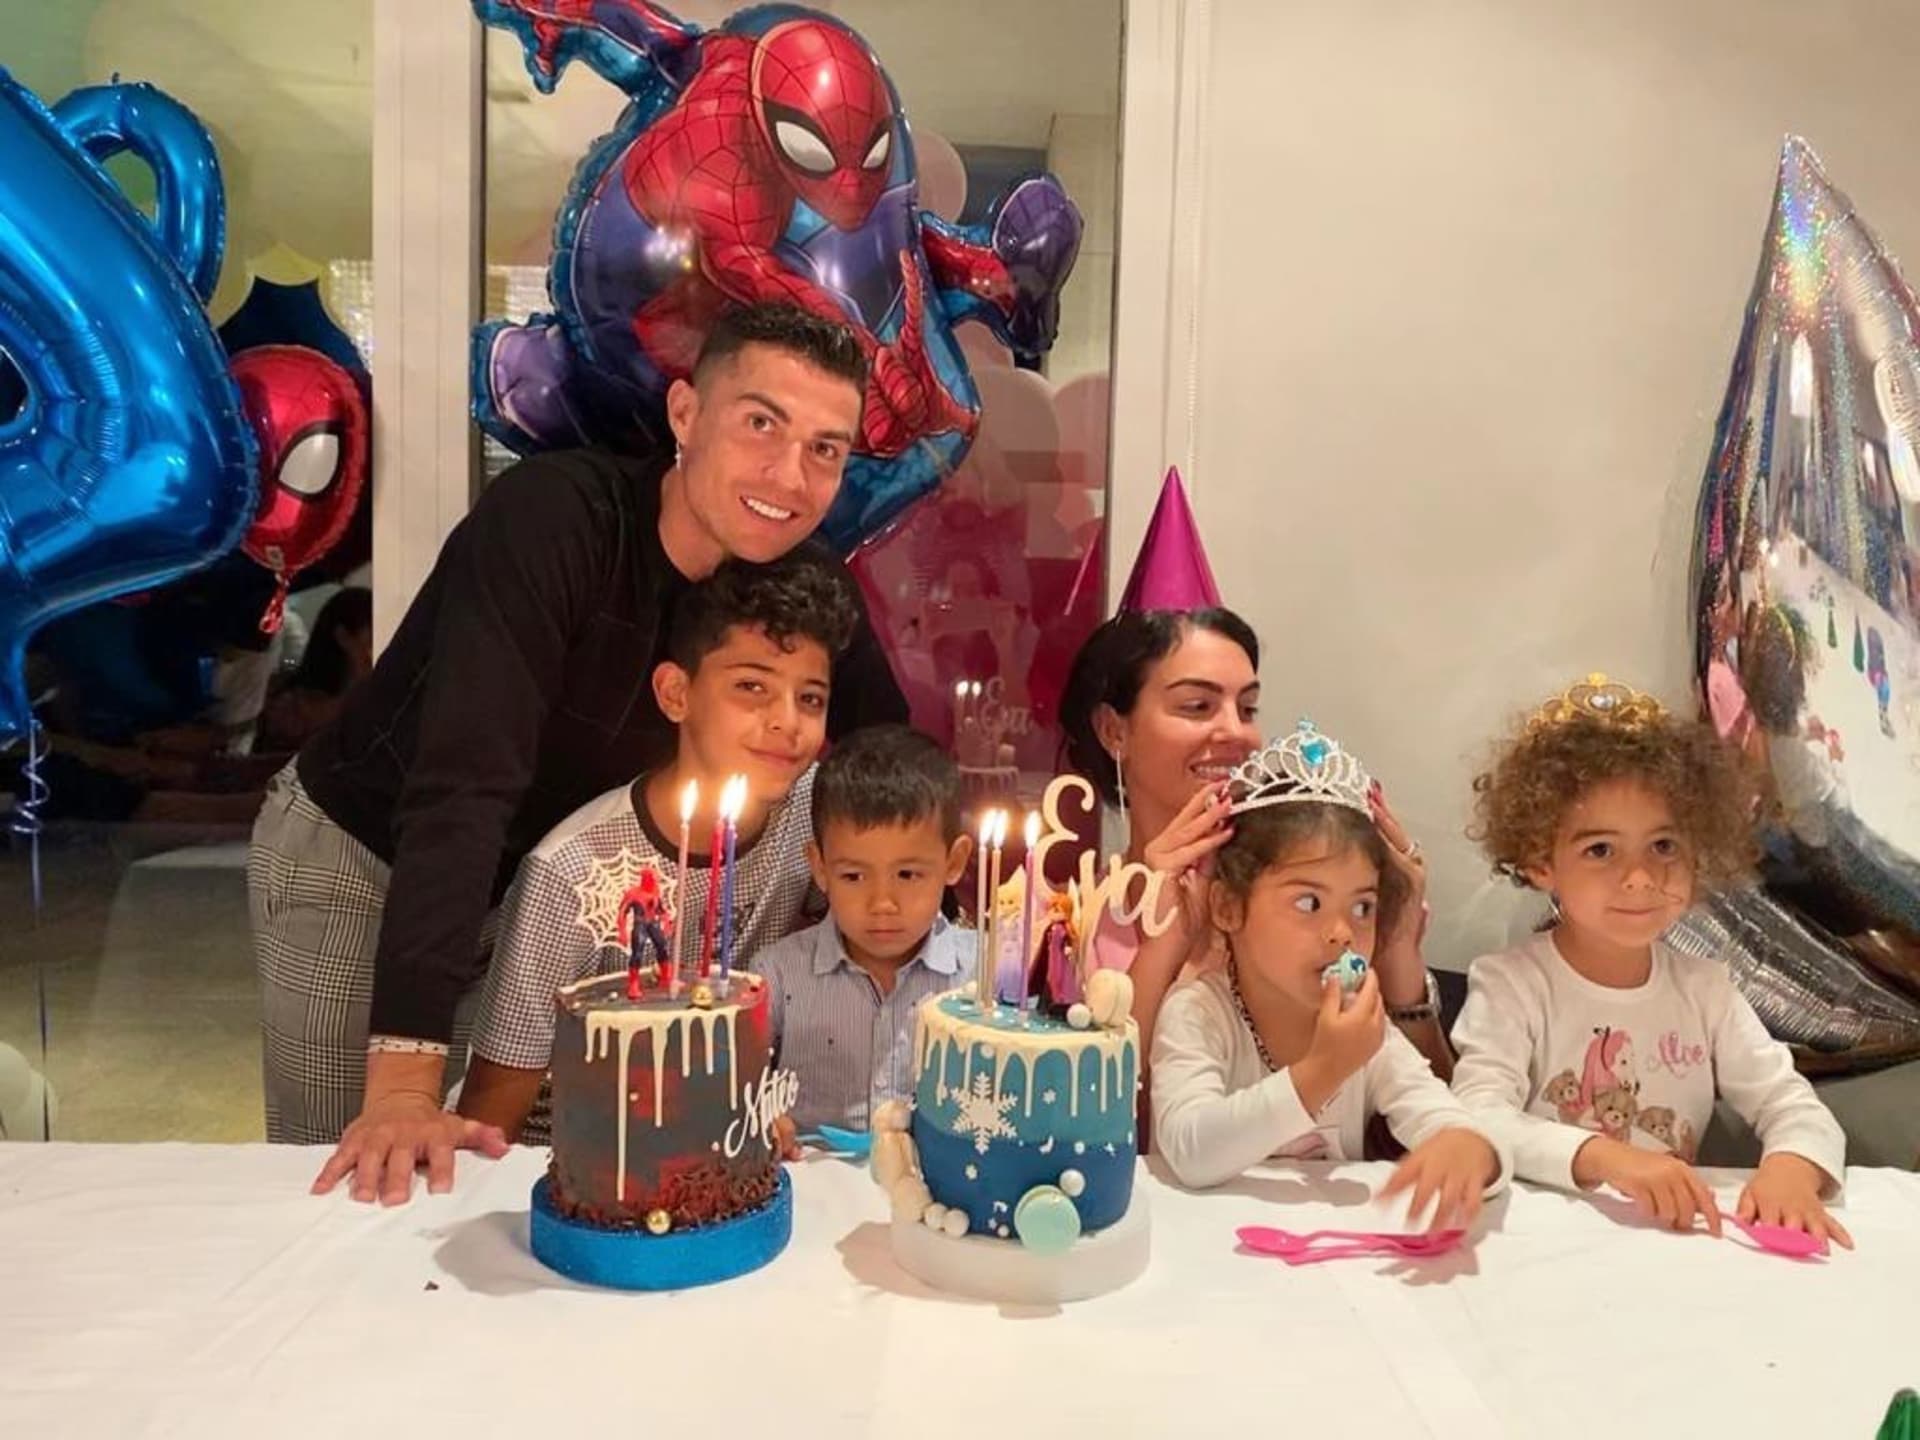 Ronaldova rodina pohromadě. Už brzy je čeká stěhování do Saúdské Arábie, kde bude Cristiano nově hrát.